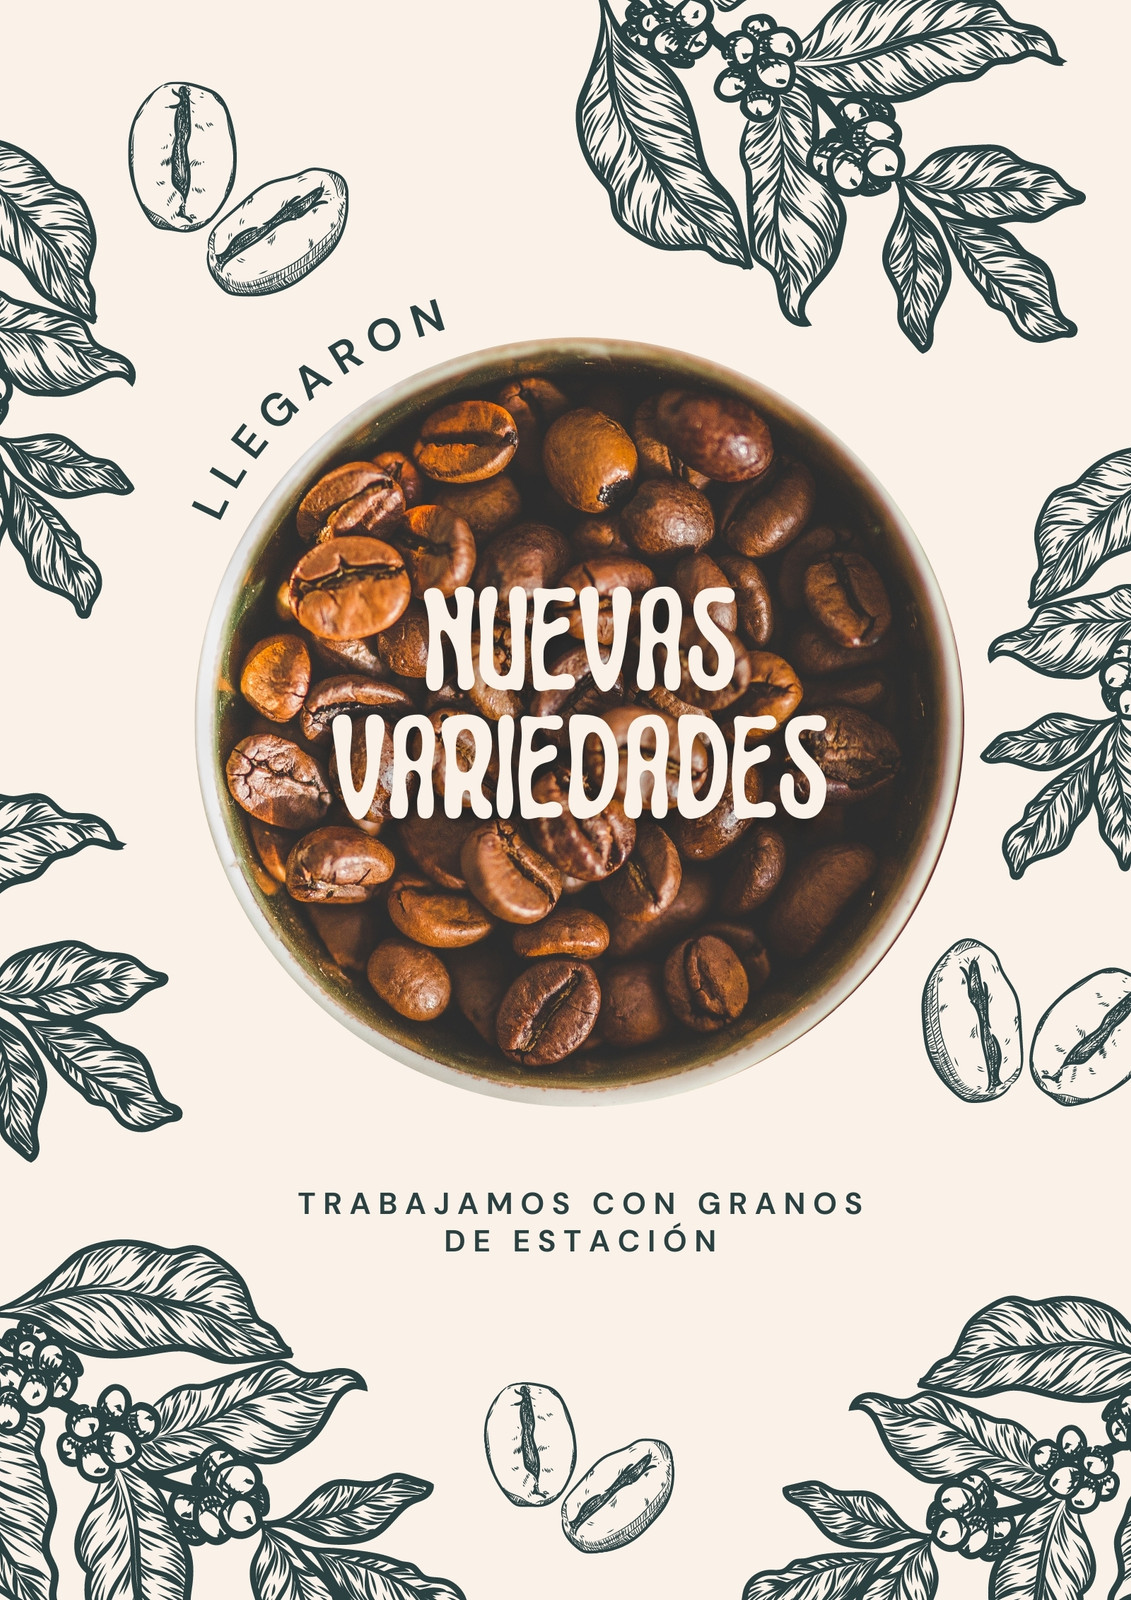 Flyer de diseño tradicional sobre anuncio de nuevo blend de café, color verde azulado con foto de granos de café y granos de café y planta ilustrados